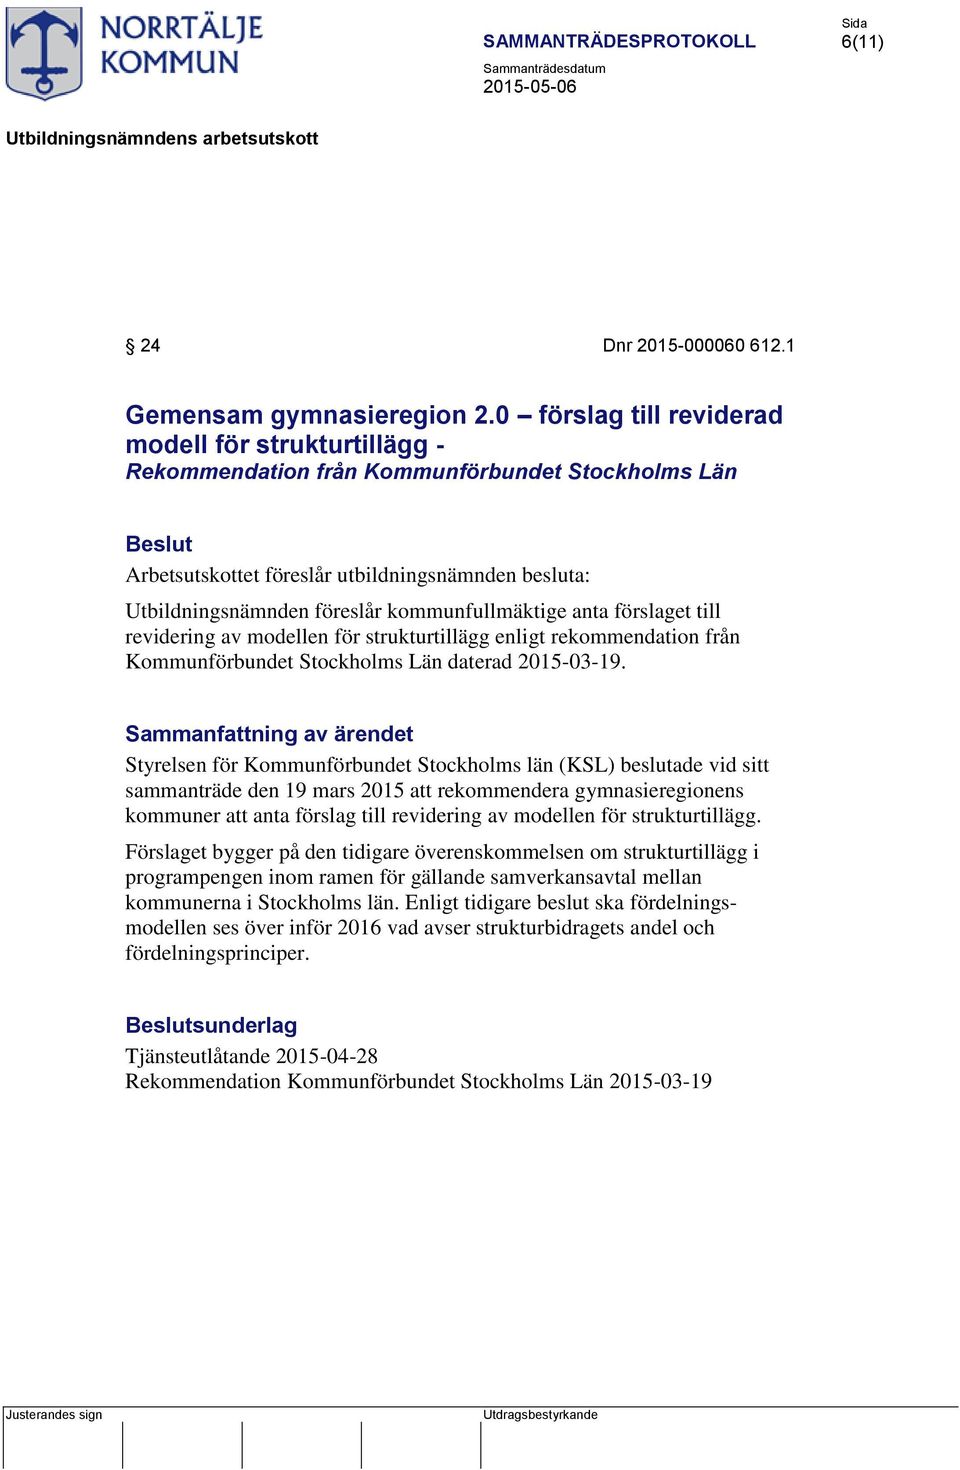 strukturtillägg enligt rekommendation från Kommunförbundet Stockholms Län daterad 2015-03-19.